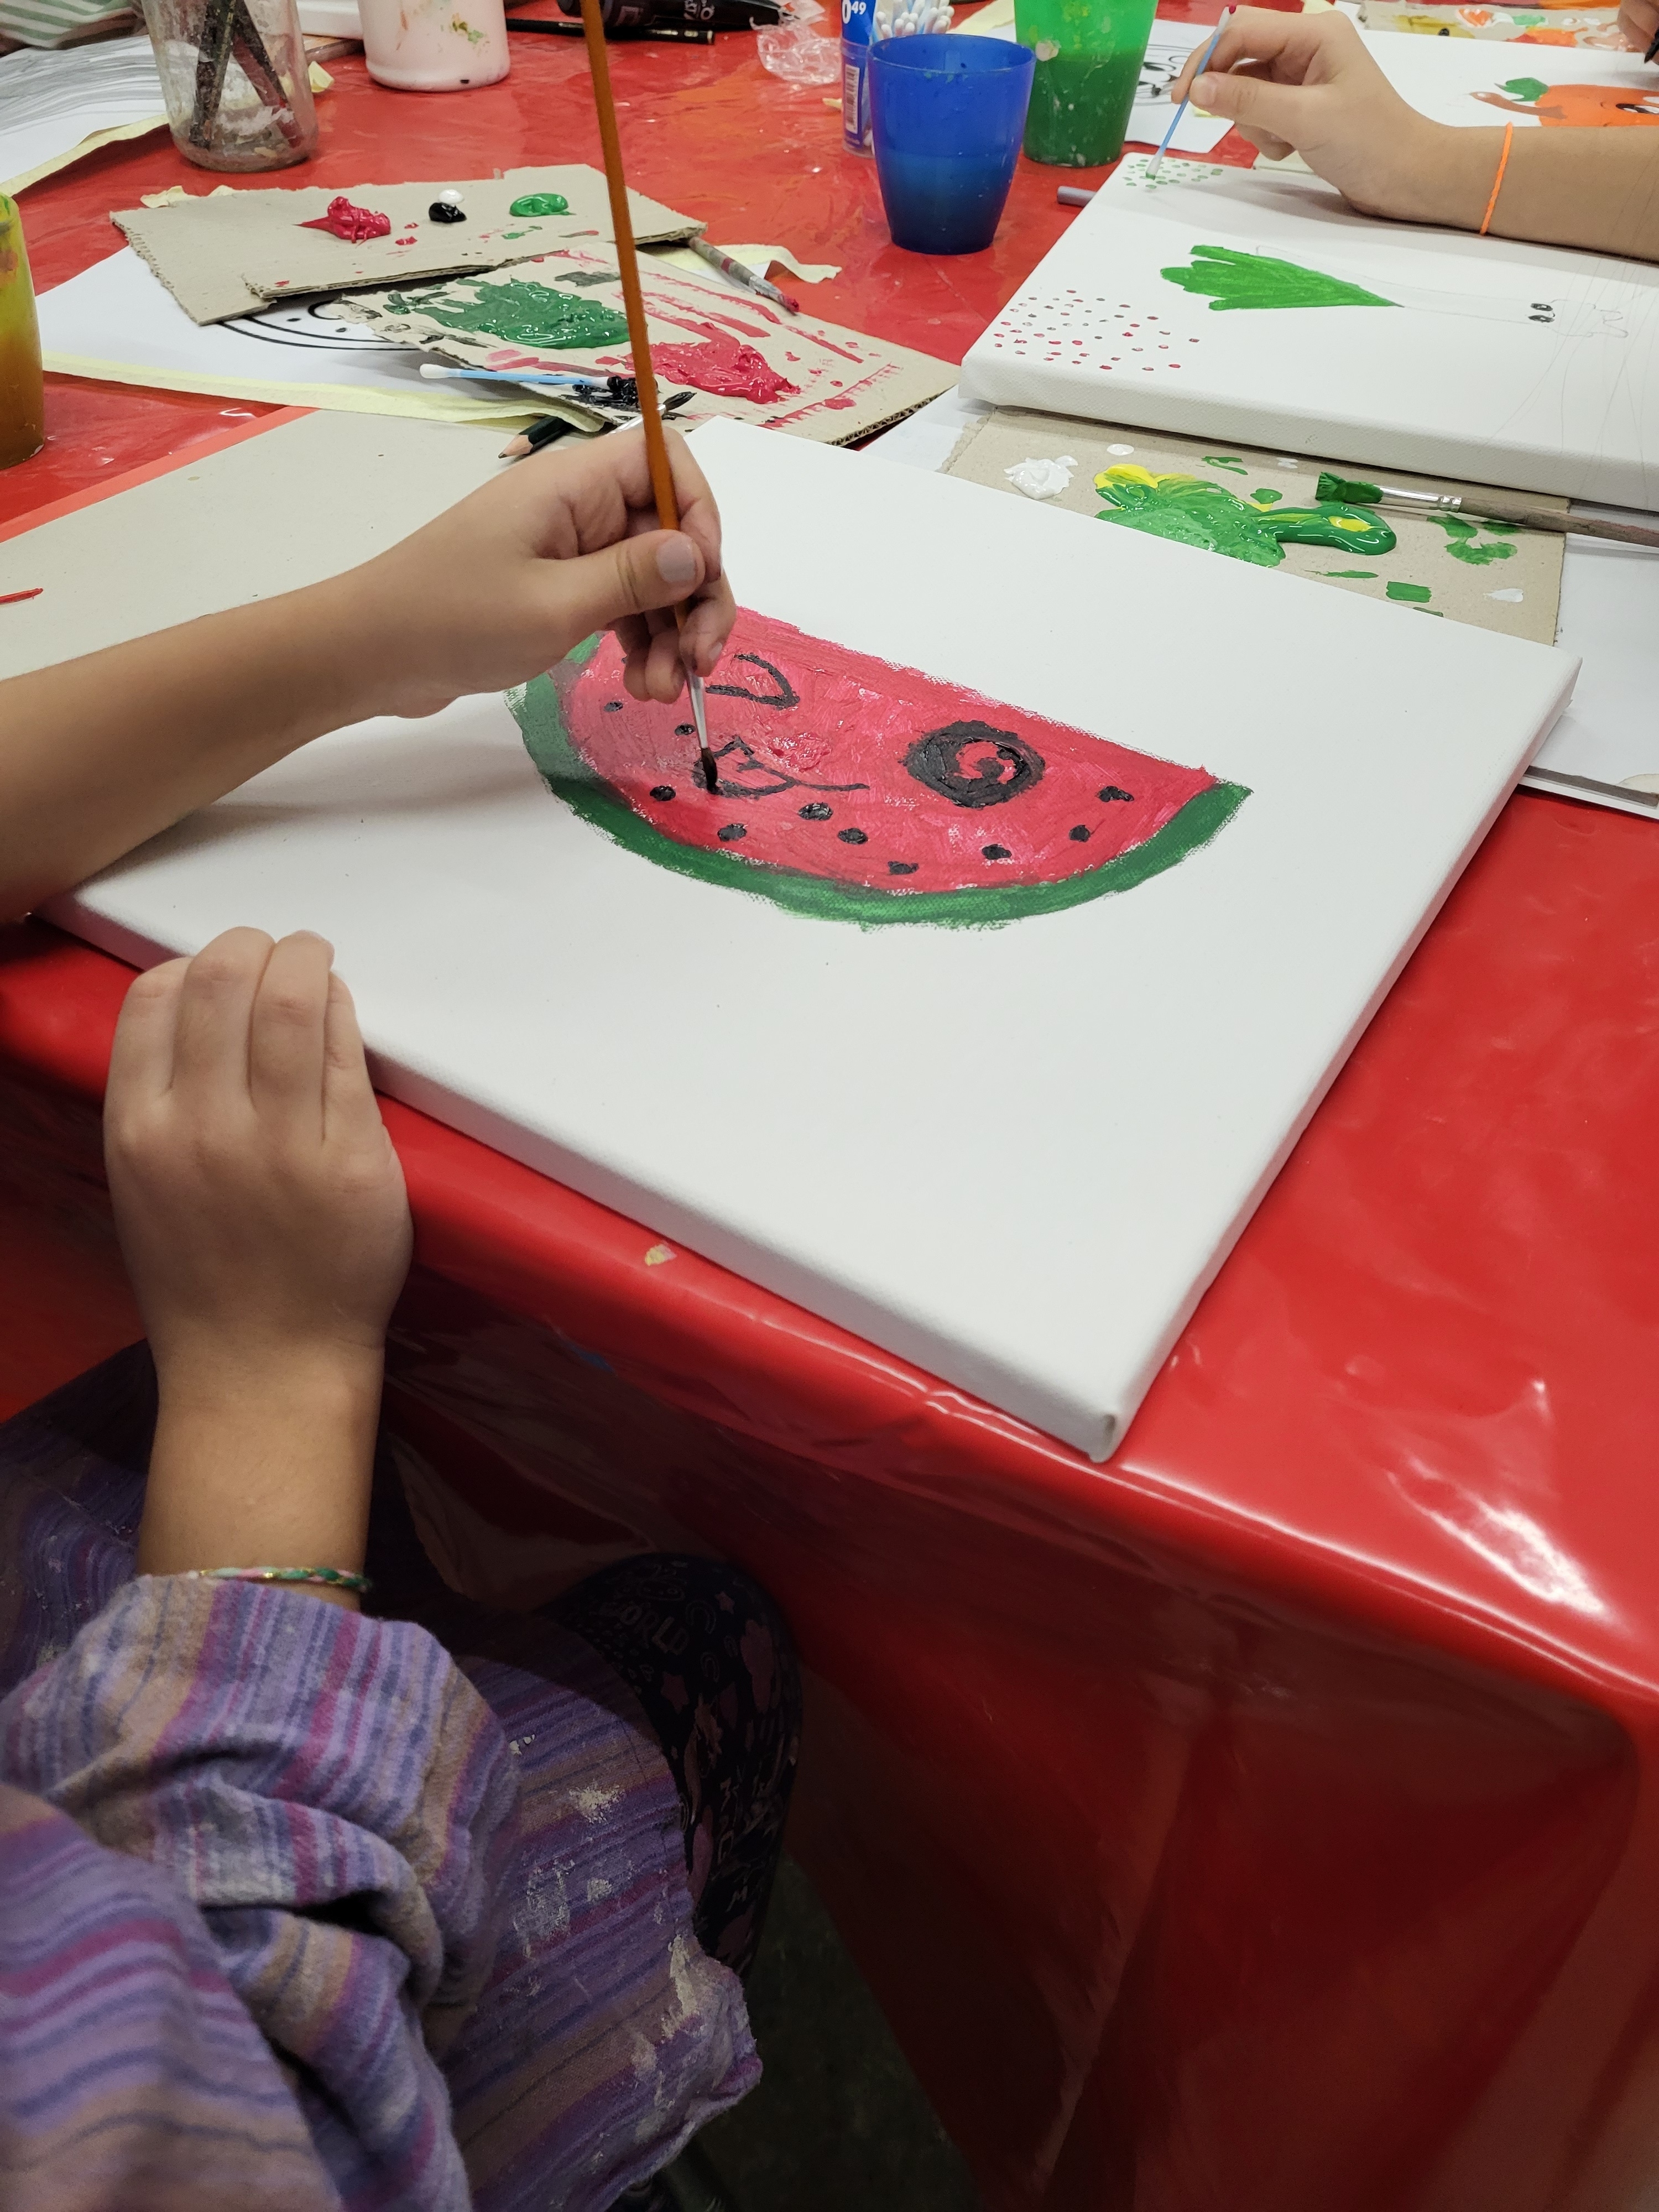 In der Mitte des Bildes liegt eine weiße Leinwand auf einem Tisch, der mit einer roten Basteltischdecke bedeckt ist. Eine Hand hat einen Pinsel in der Hand und mal eine Wassermelone mit Gesicht aus.